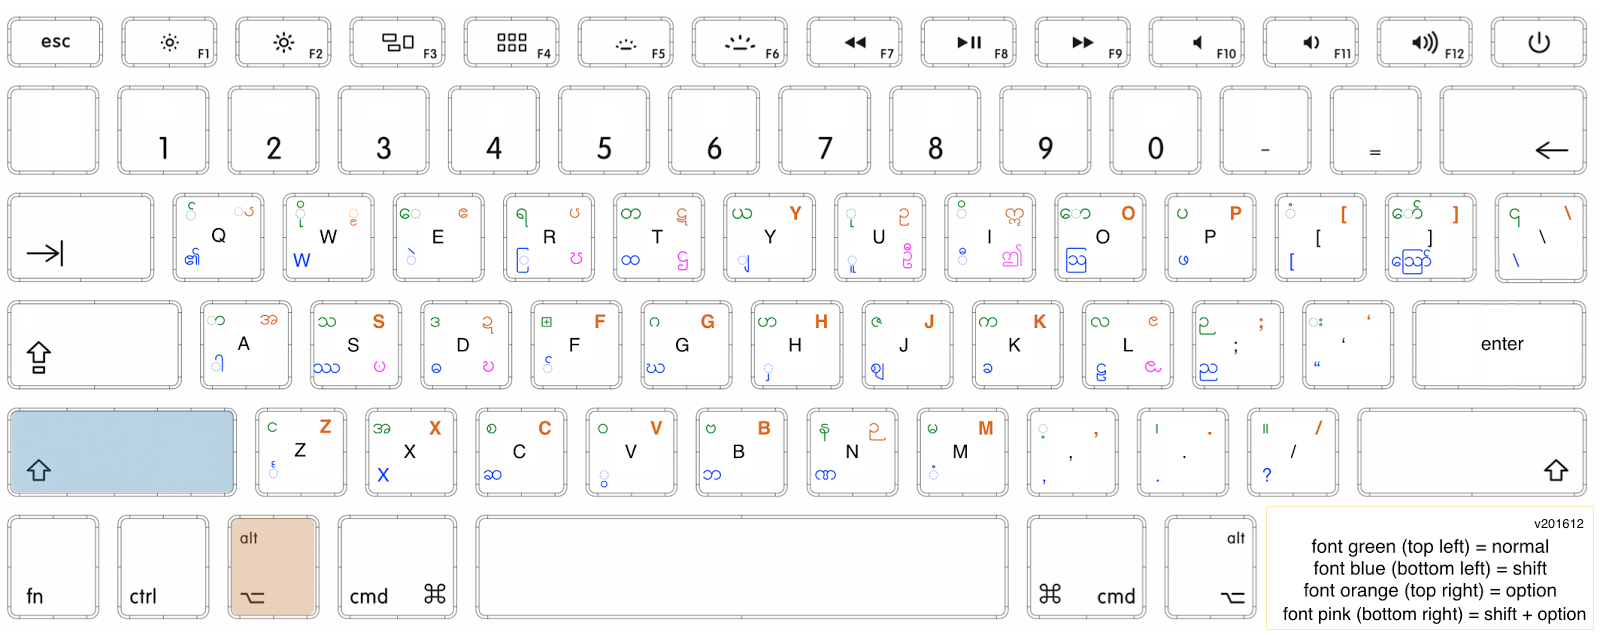 alpha zawgyi keyboard for window 10 64 bit